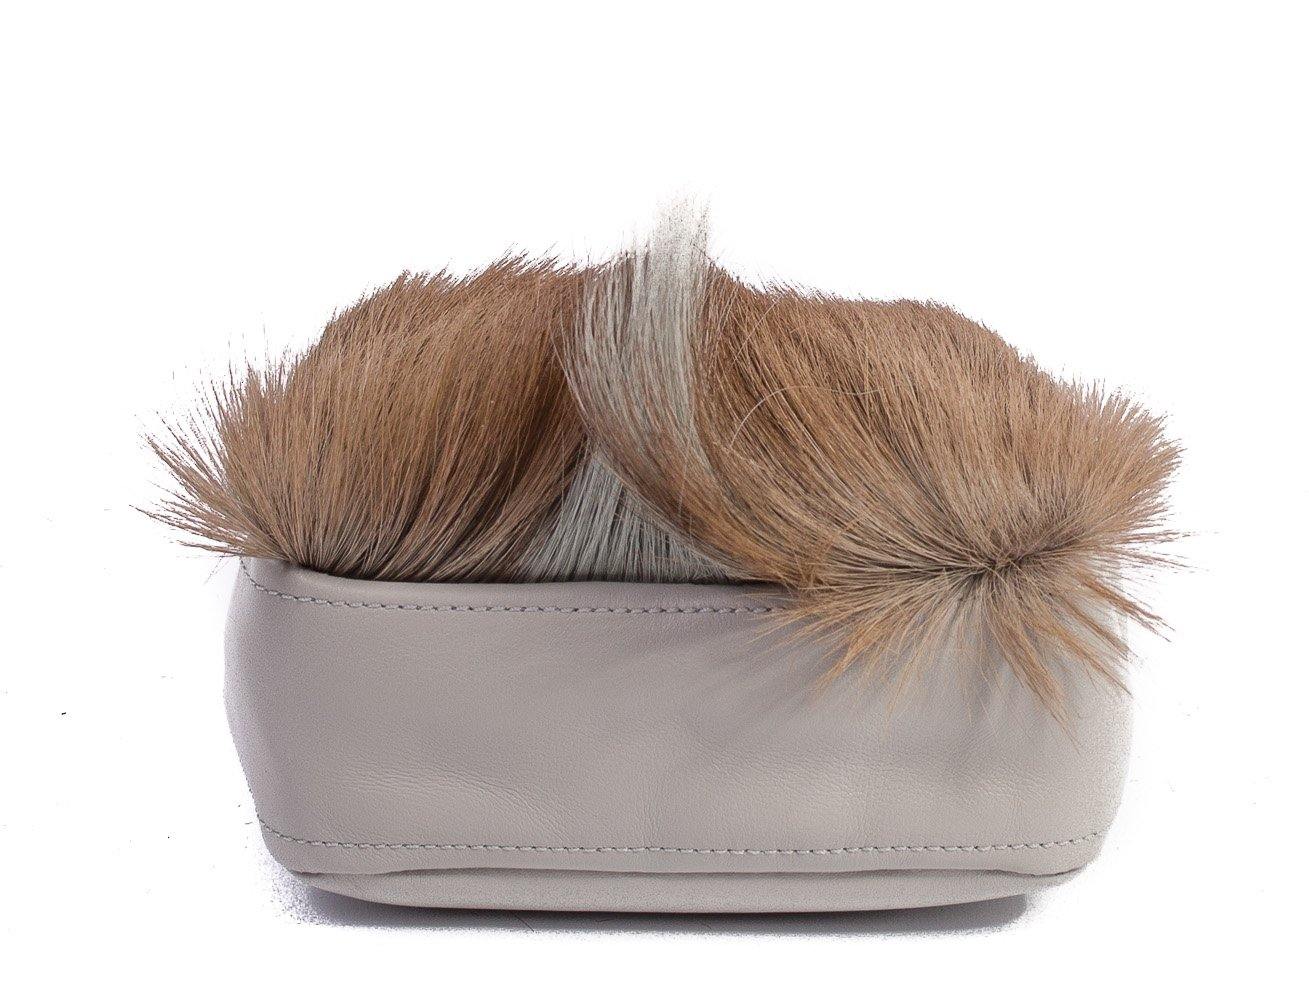 sherene melinda springbok hair-on-hide earth leather pouch bag Fan bottom